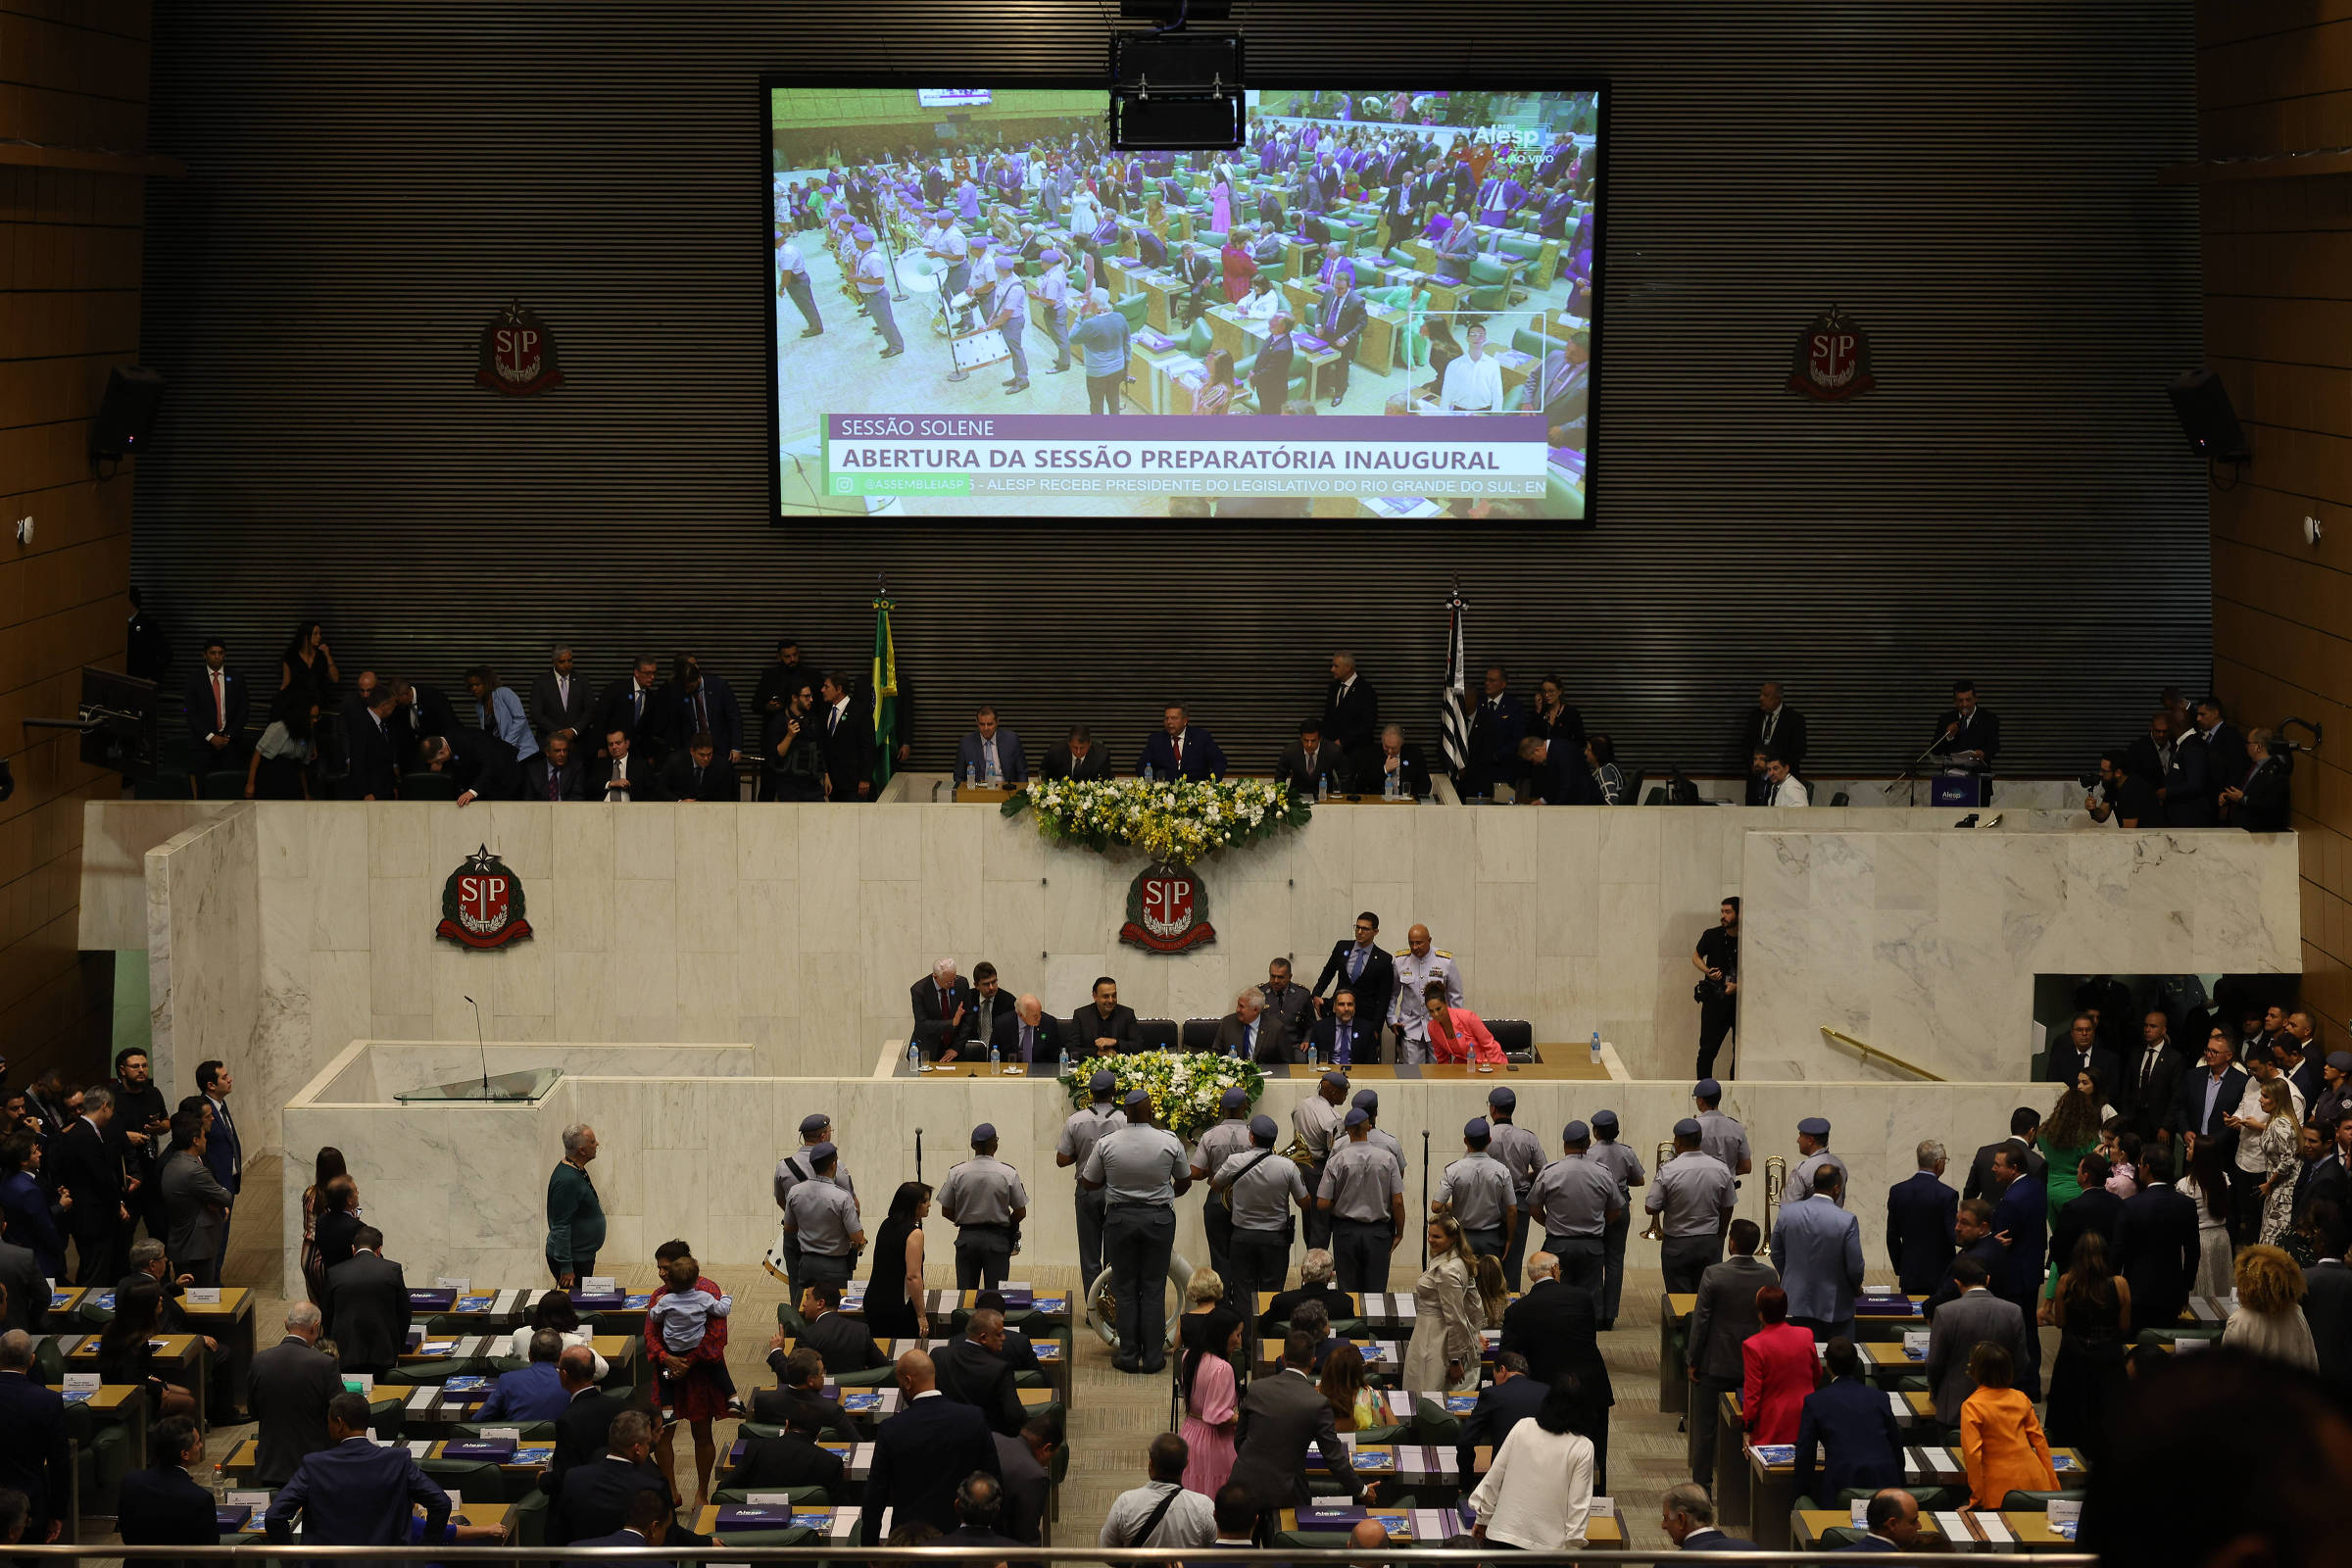 Assembleia Legislativa inaugura unidade do Poupatempo no Palácio 9 de Julho